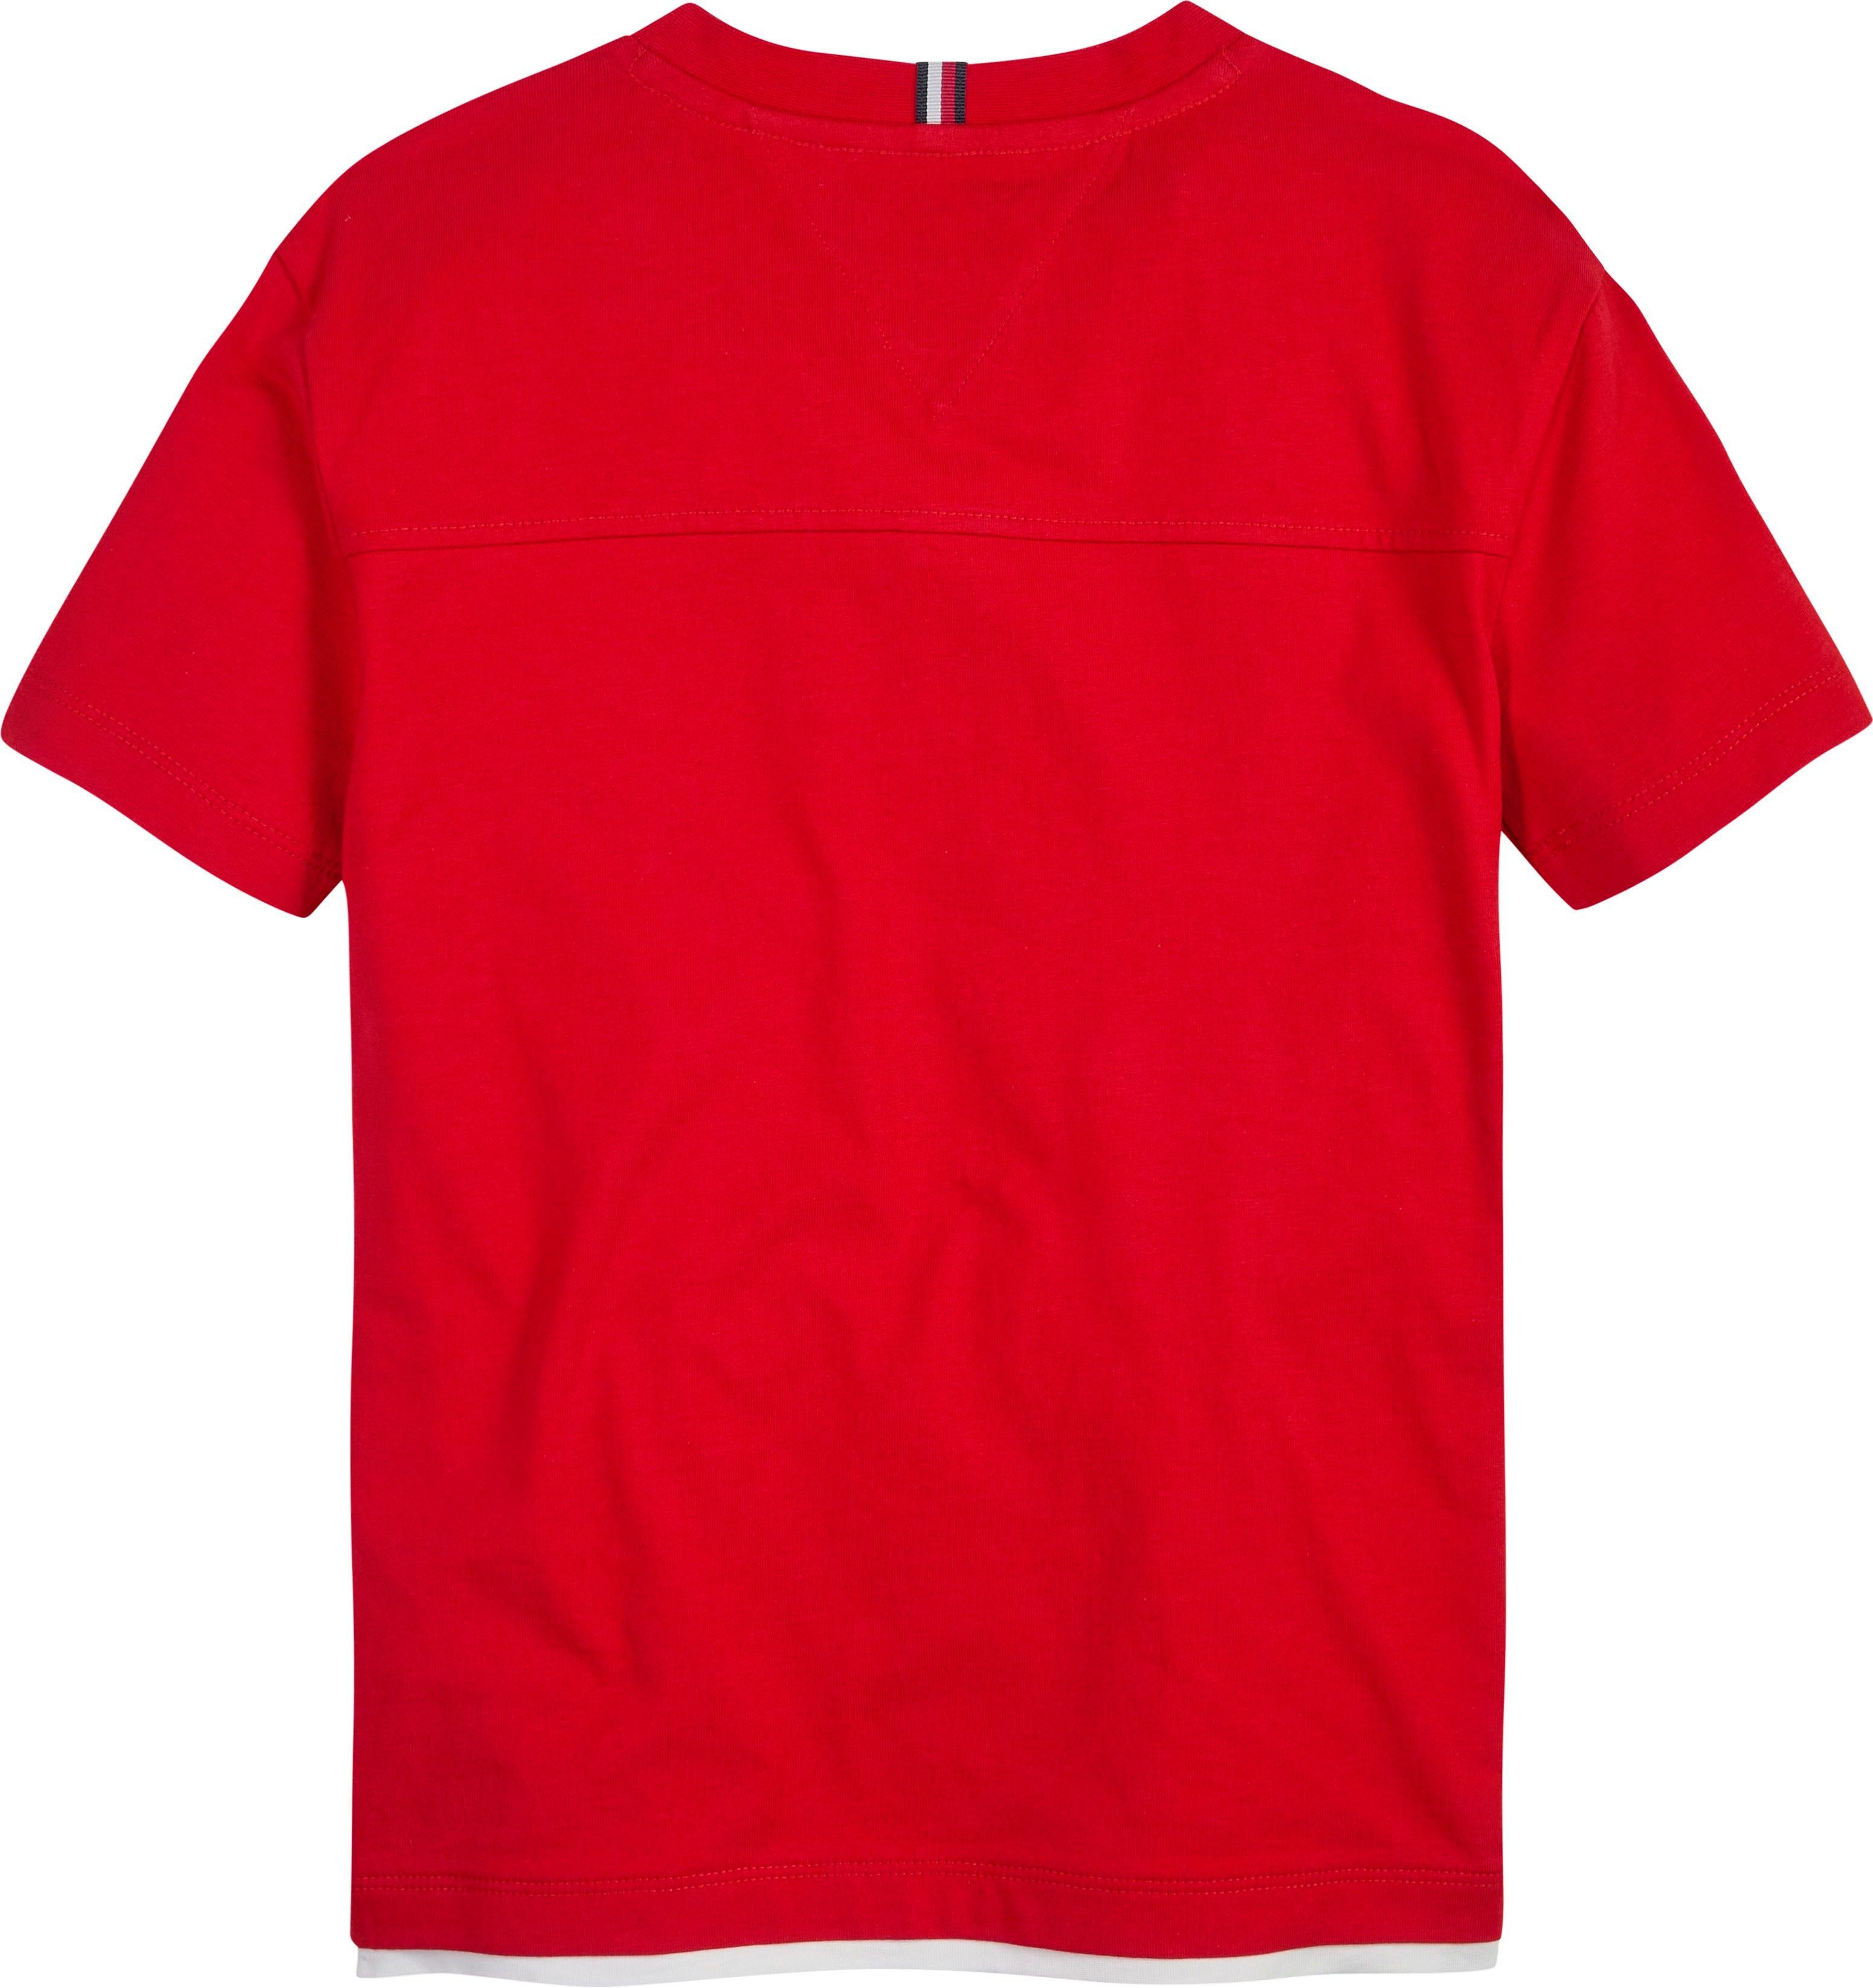 S/S Deep-Crimson T-Shirt Hilfiger VARSITY TOMMY Brust TEE mit der Logodruck auf Tommy